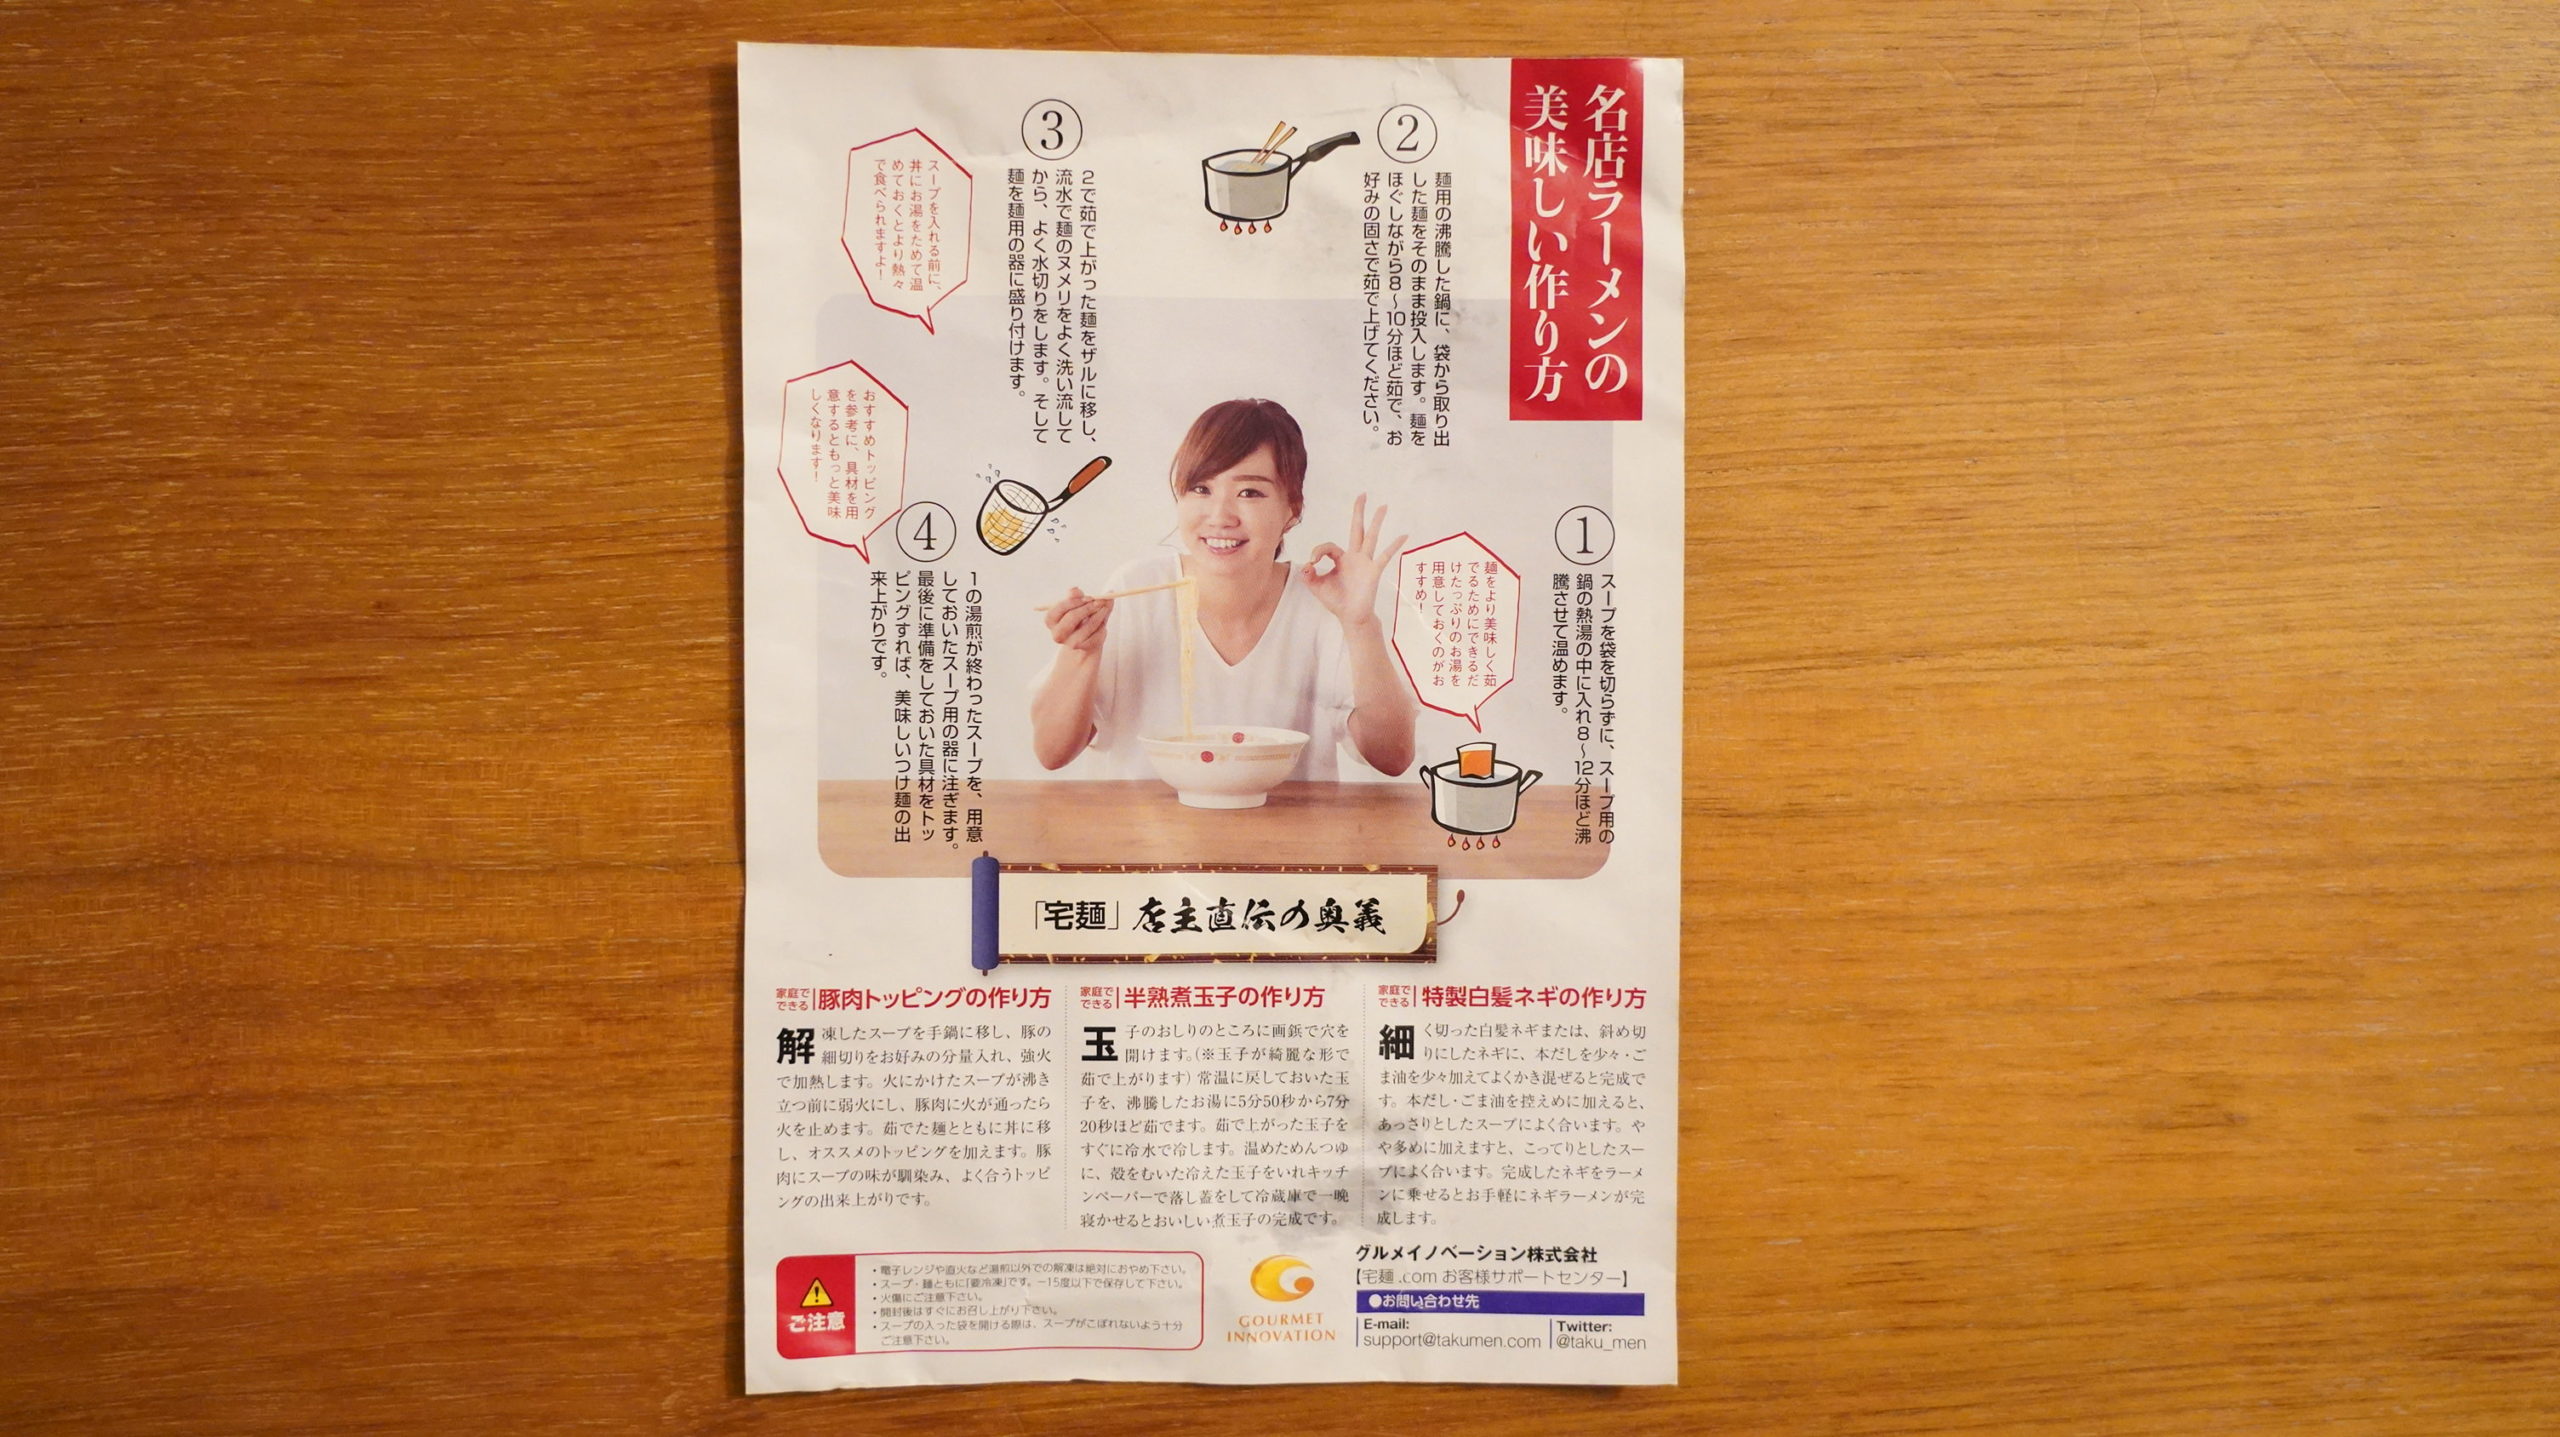 オンライン通販で注文した三田製麺所の「冷凍つけ麺」の作り方の説明書の写真